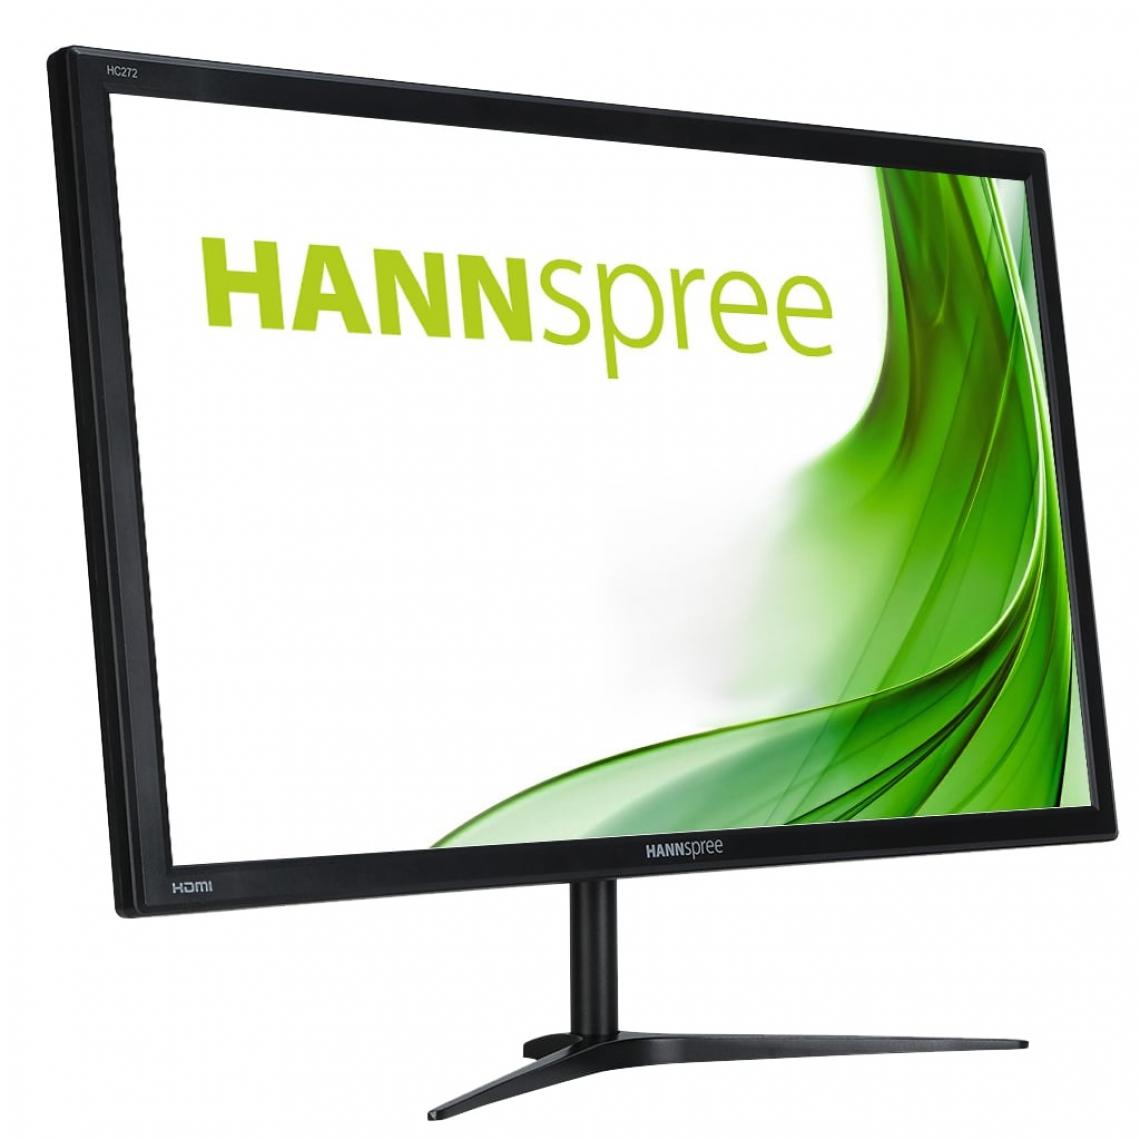 Hannspree - HC272PPB 27p TFT LED Mon HC272PPB 27p TFT LED Monitor 16:9 WQHD 2560x1440 300cd/m2 5ms OD VGA HDMI 1.4 - Moniteur PC